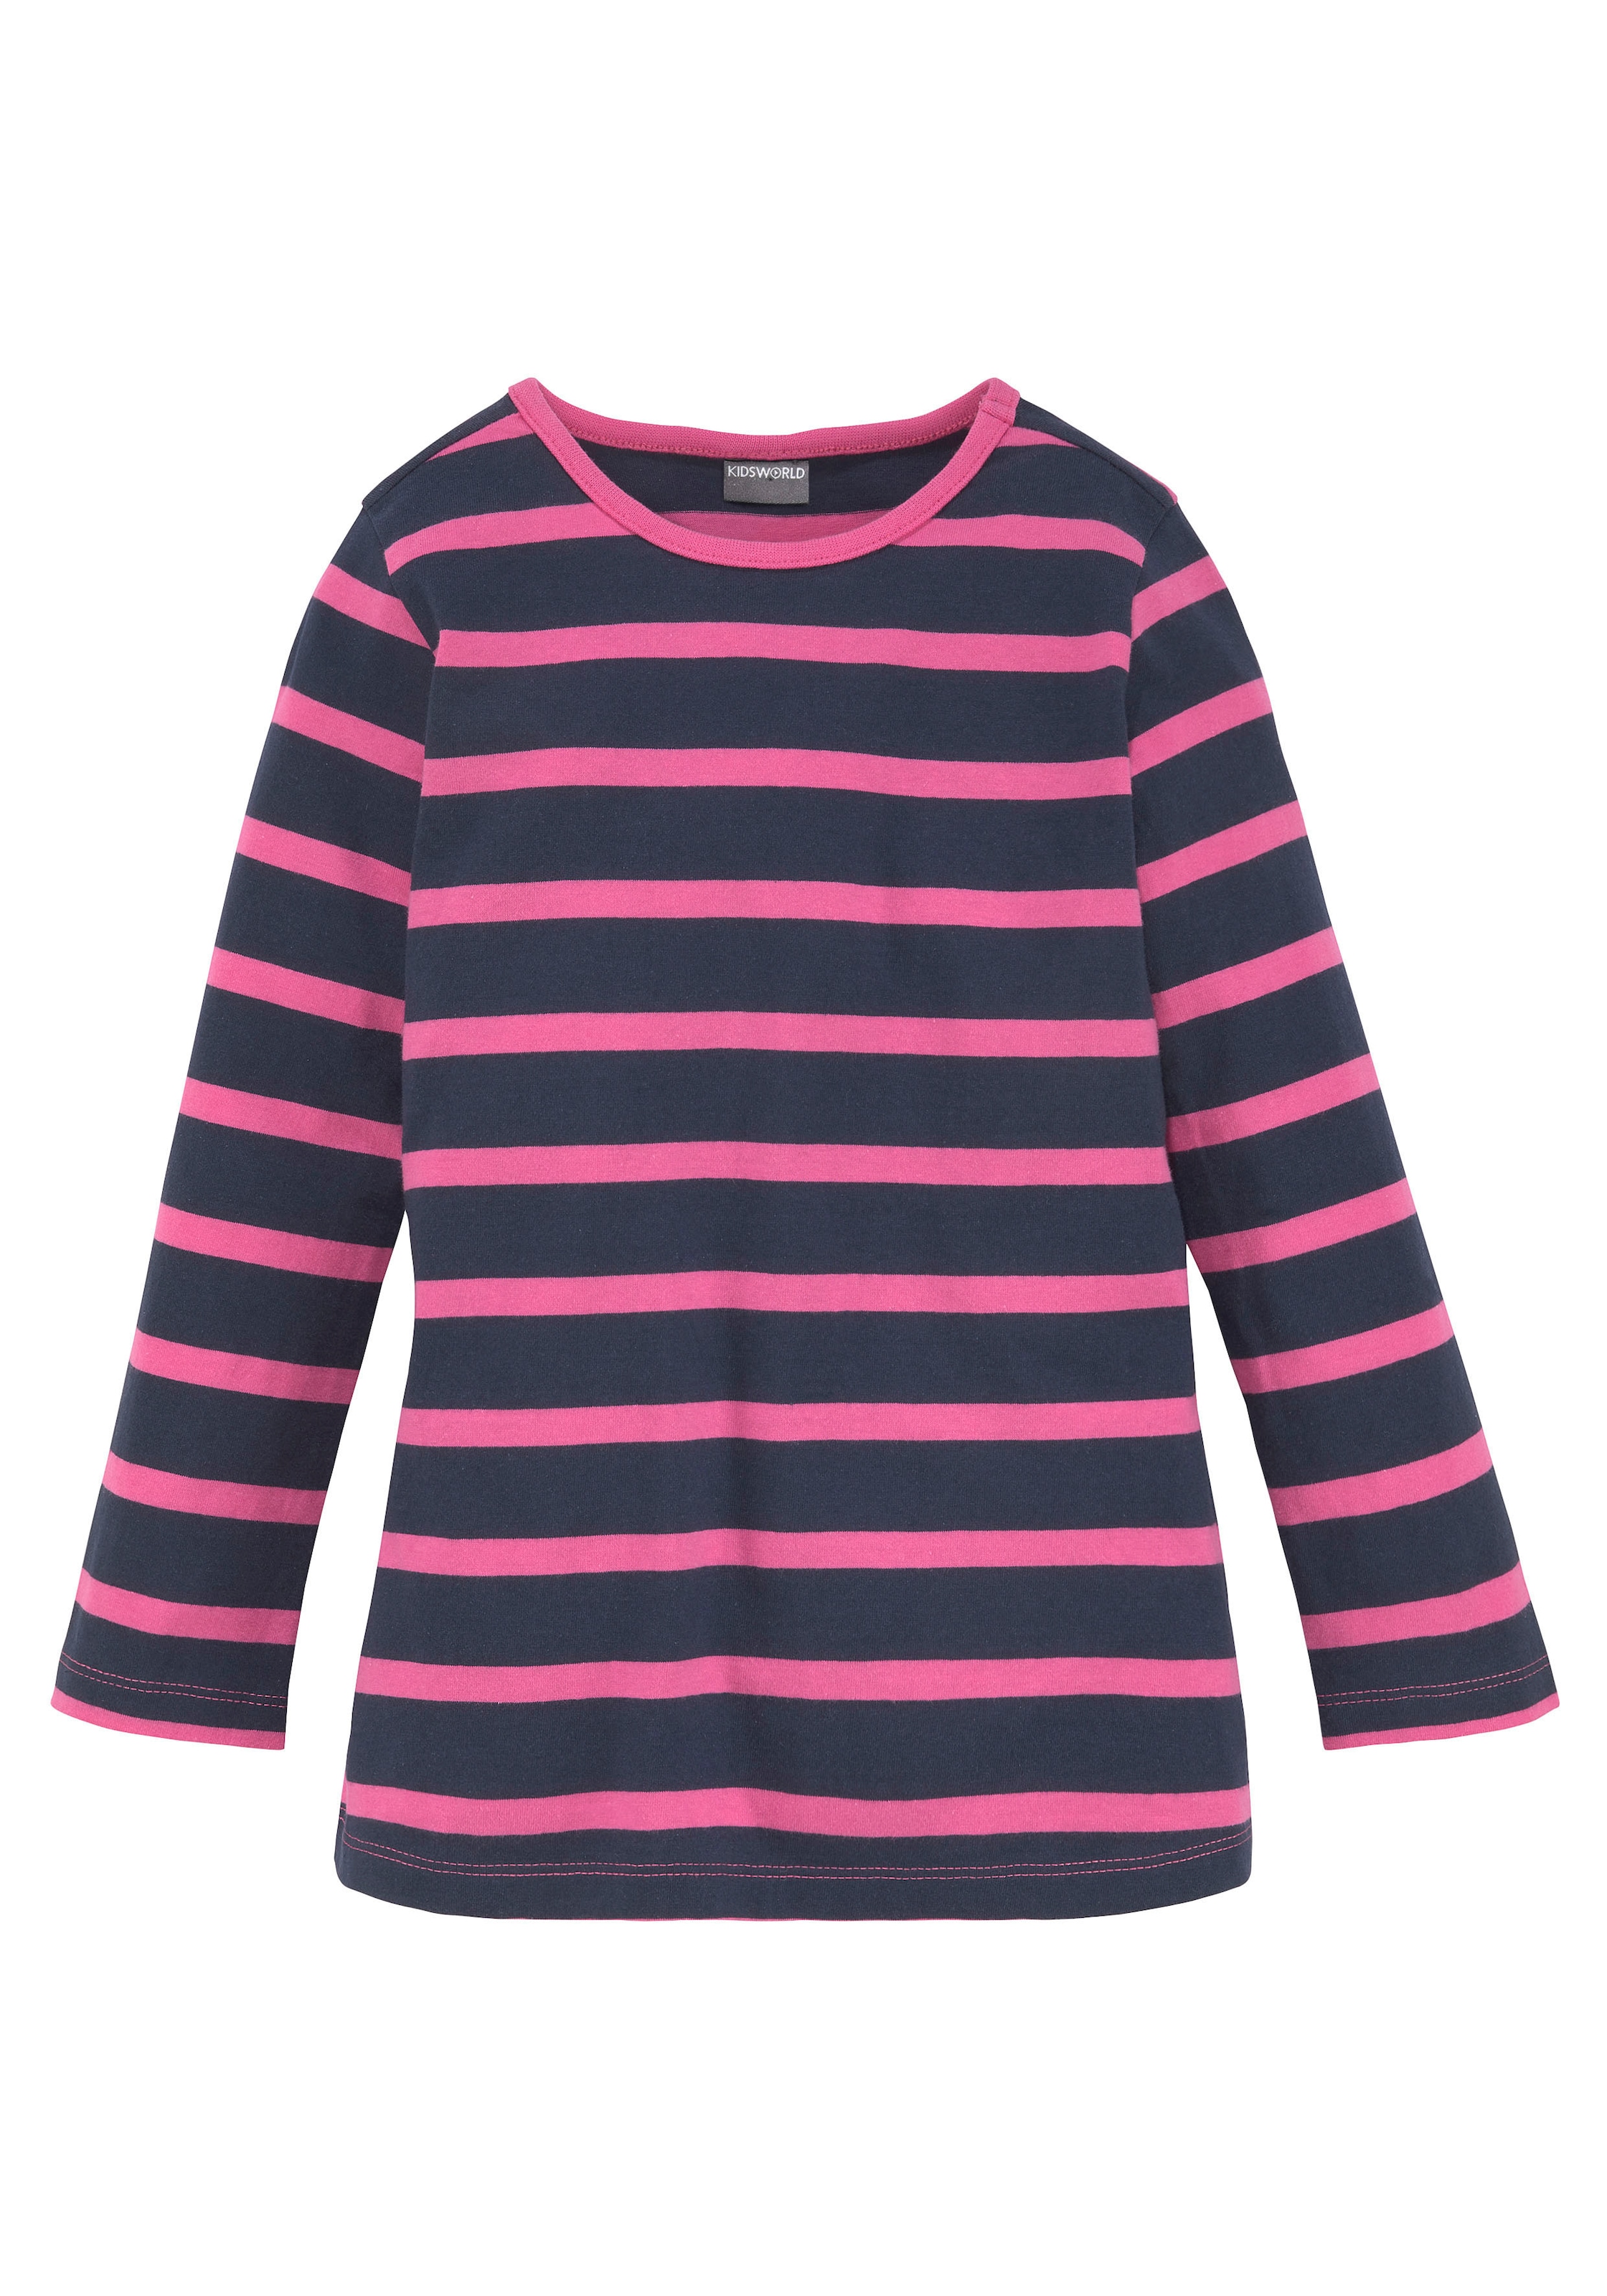 KIDSWORLD Longshirt »für kleine Mädchen«, mit großem Print und schönen Streifen